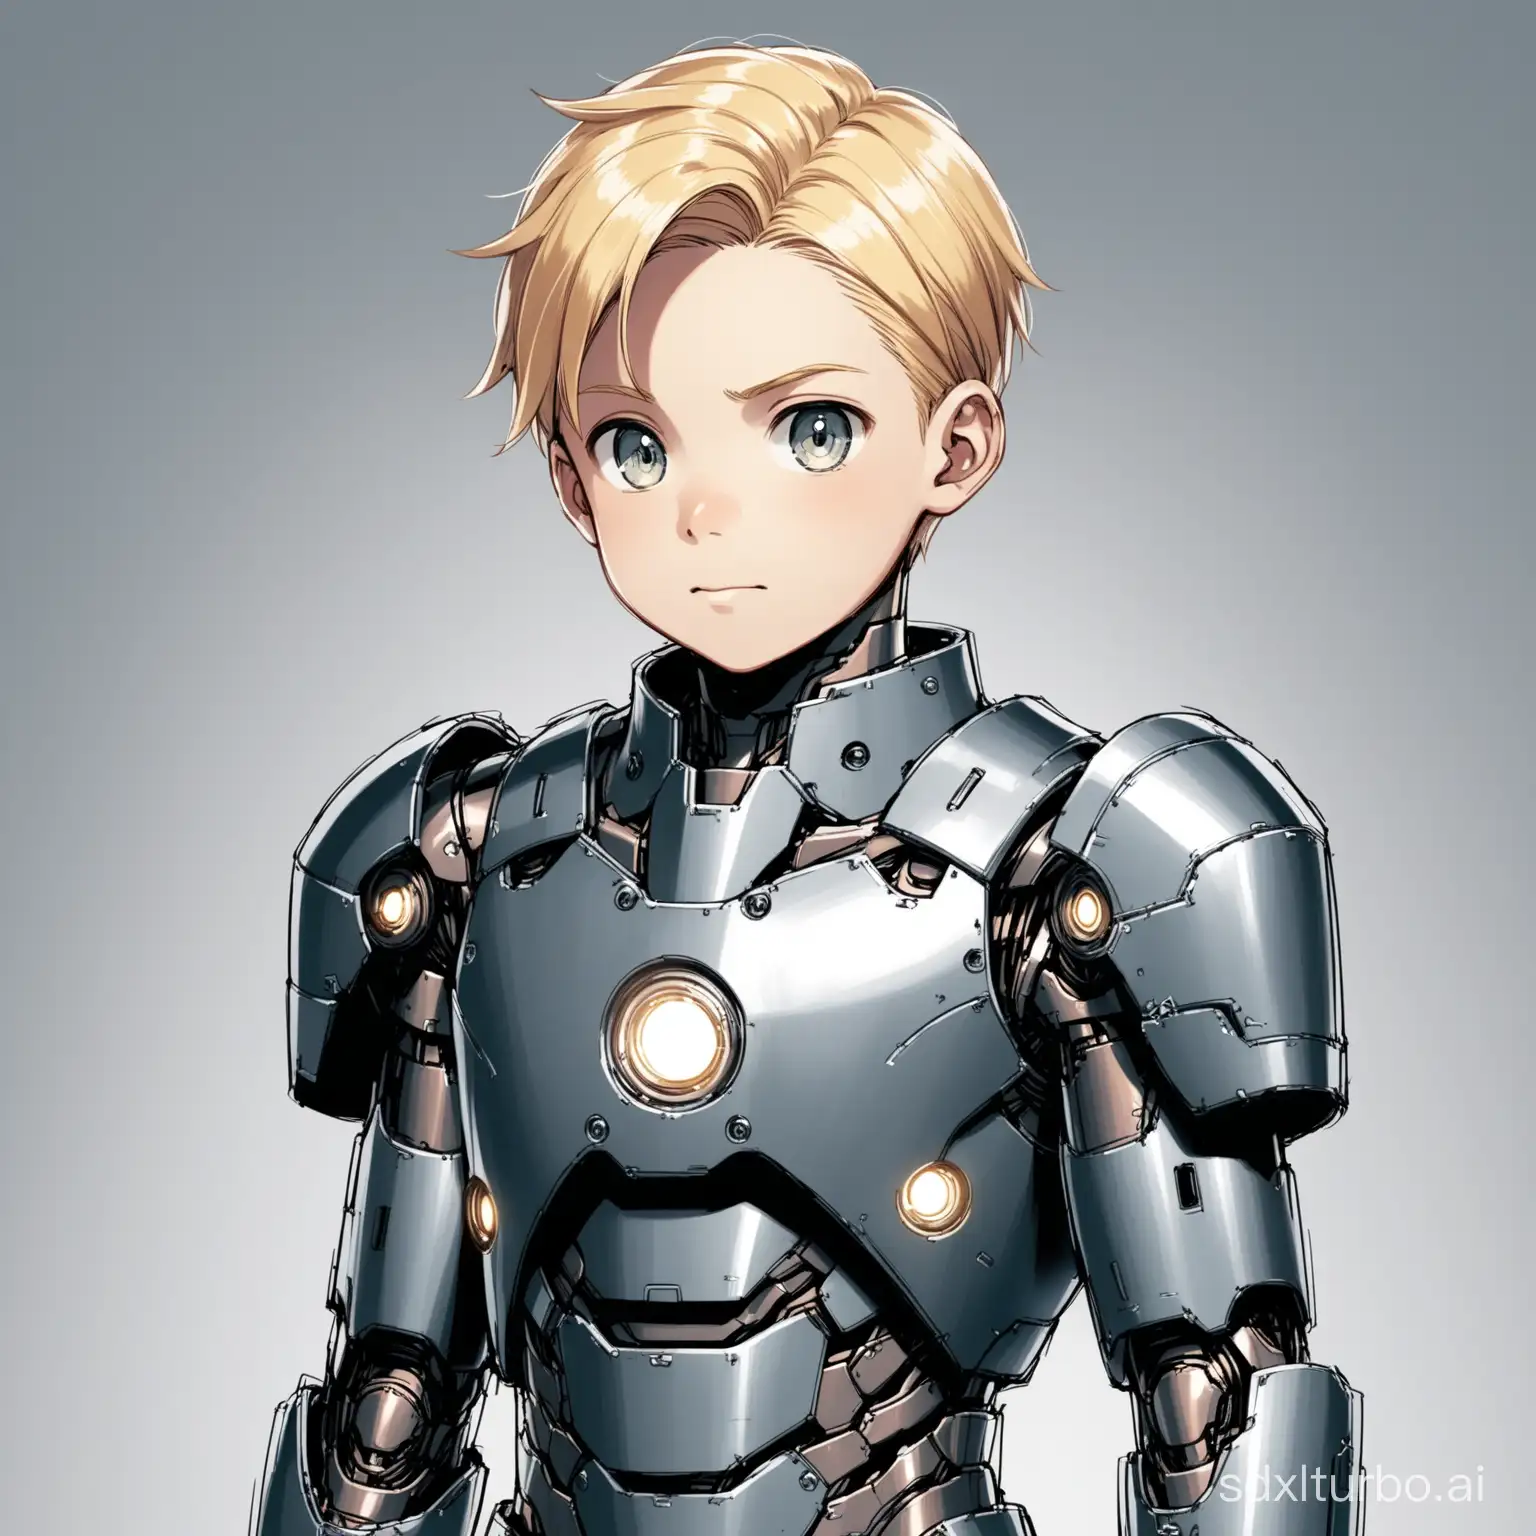 a 12 year old blonde boy as Iron Boy